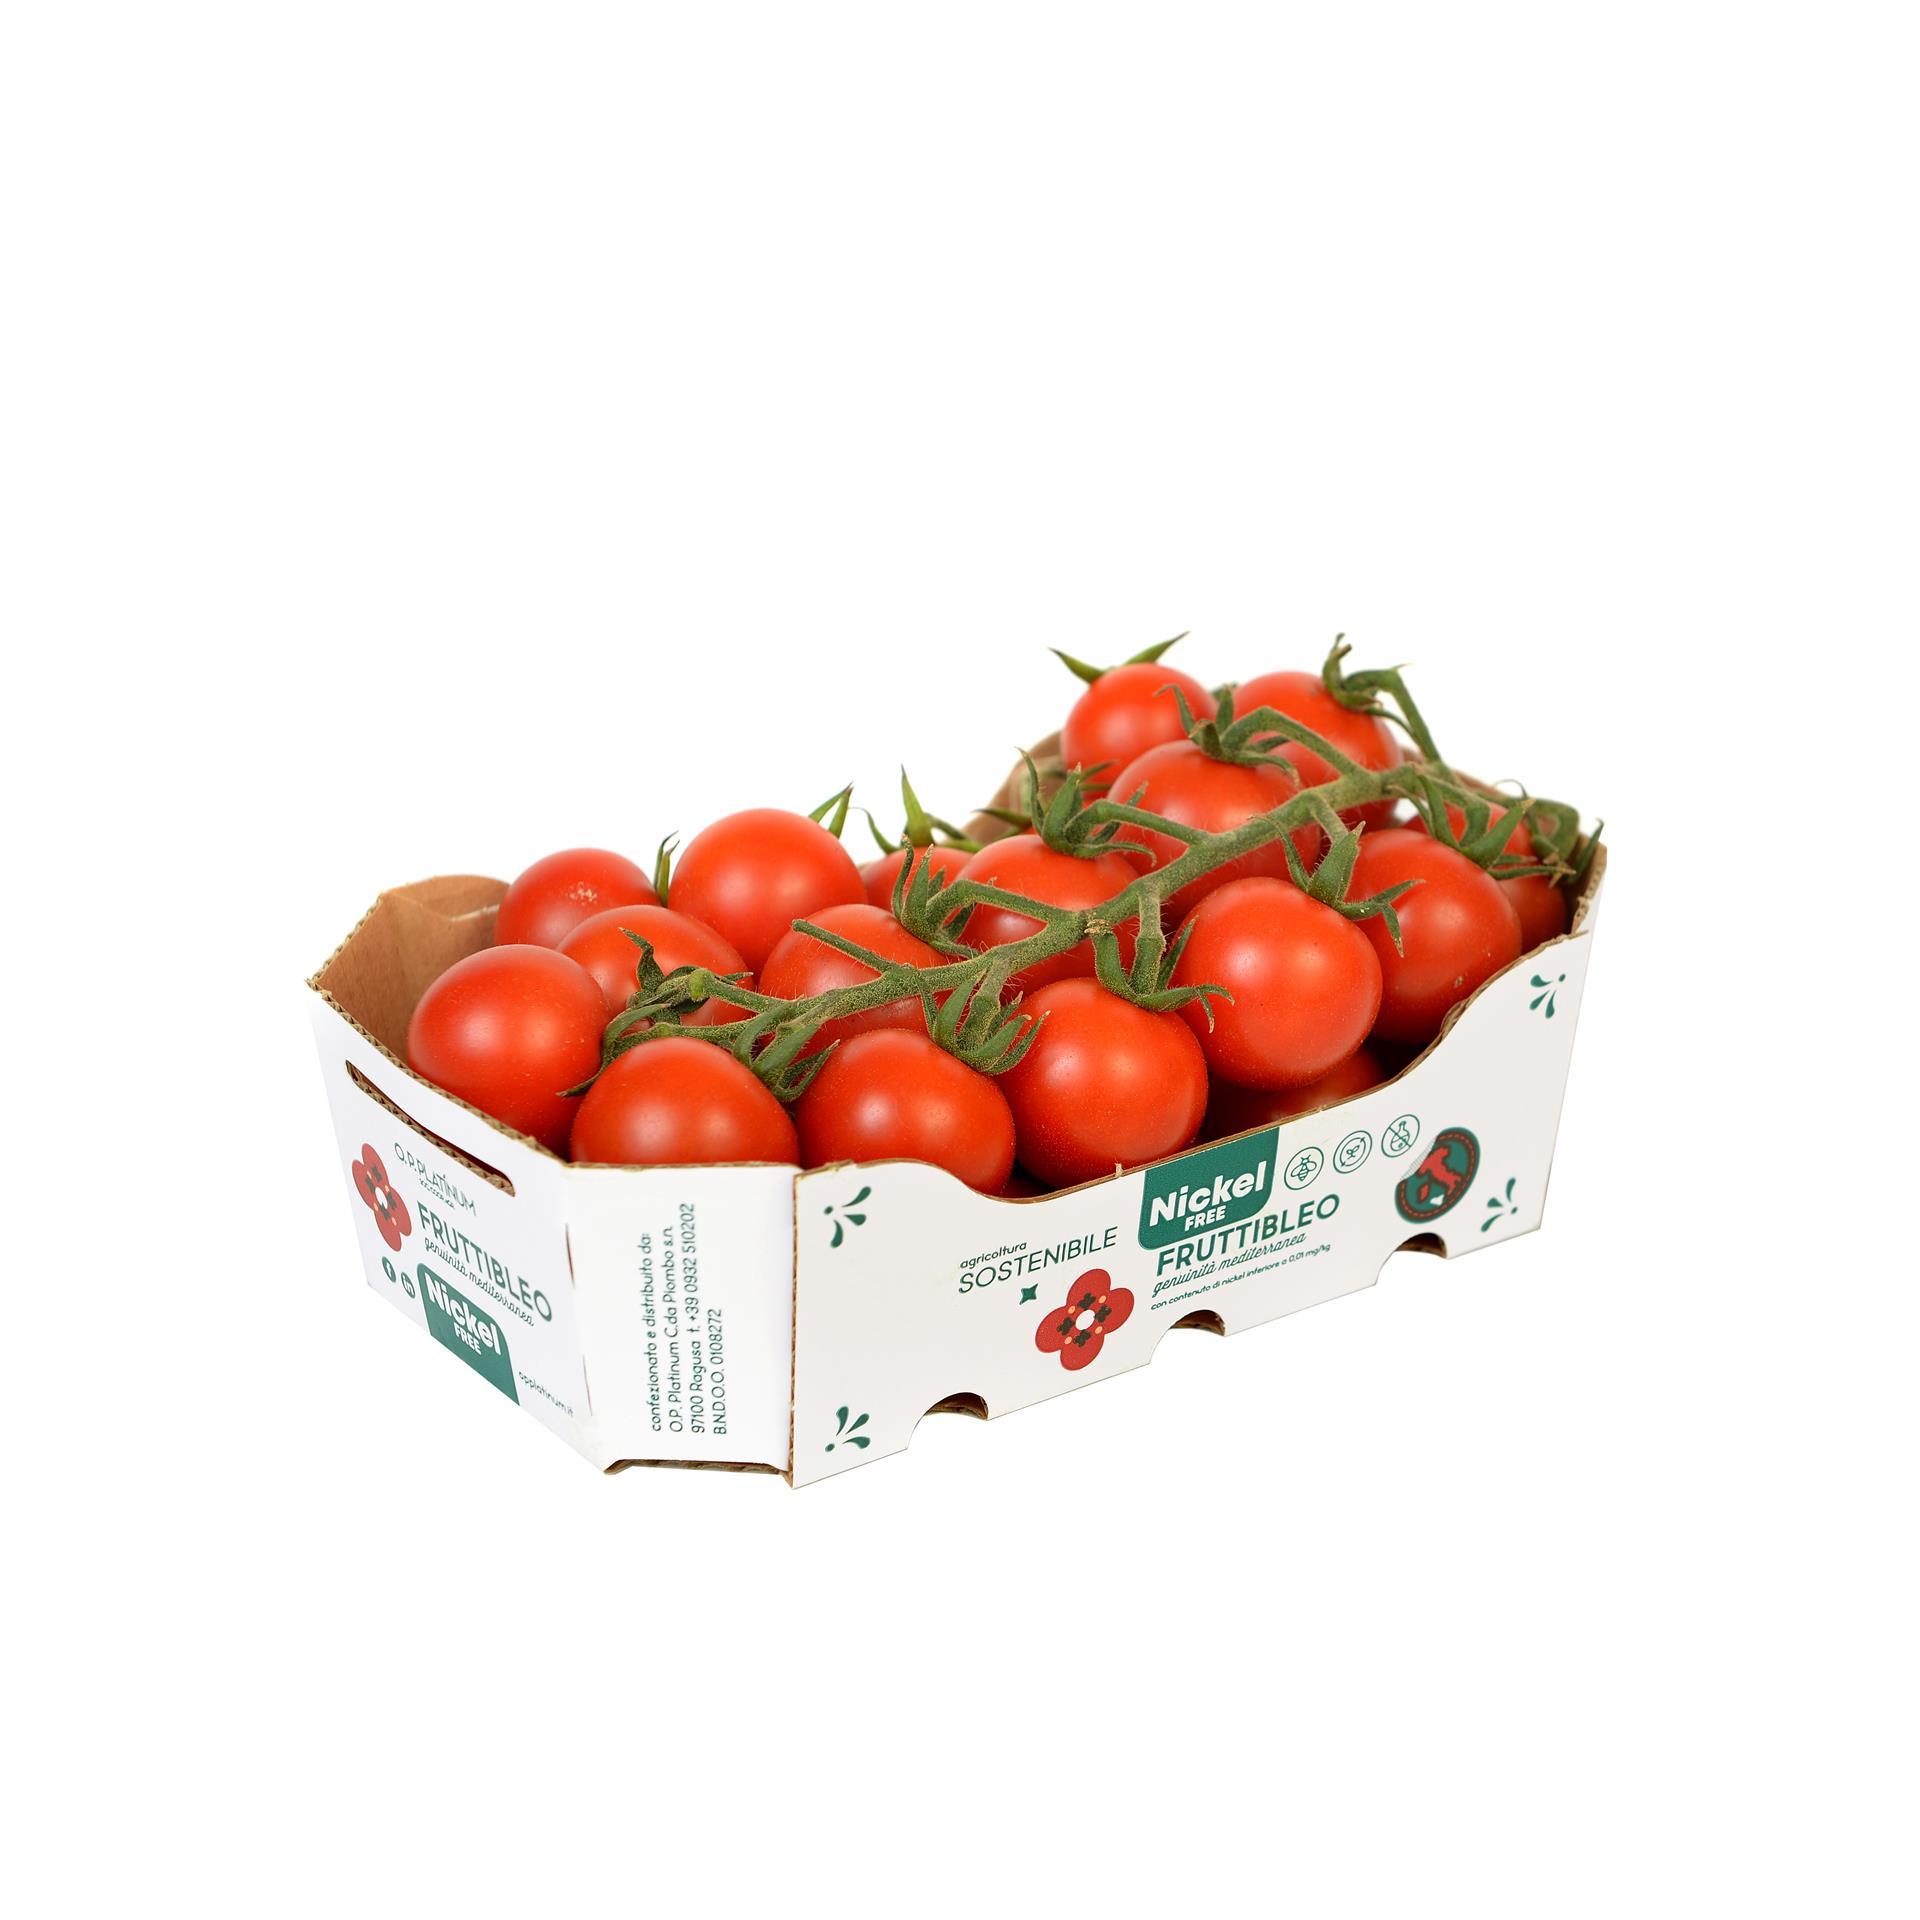 pomodoro ciliegino fruttibleo o.p. platinum